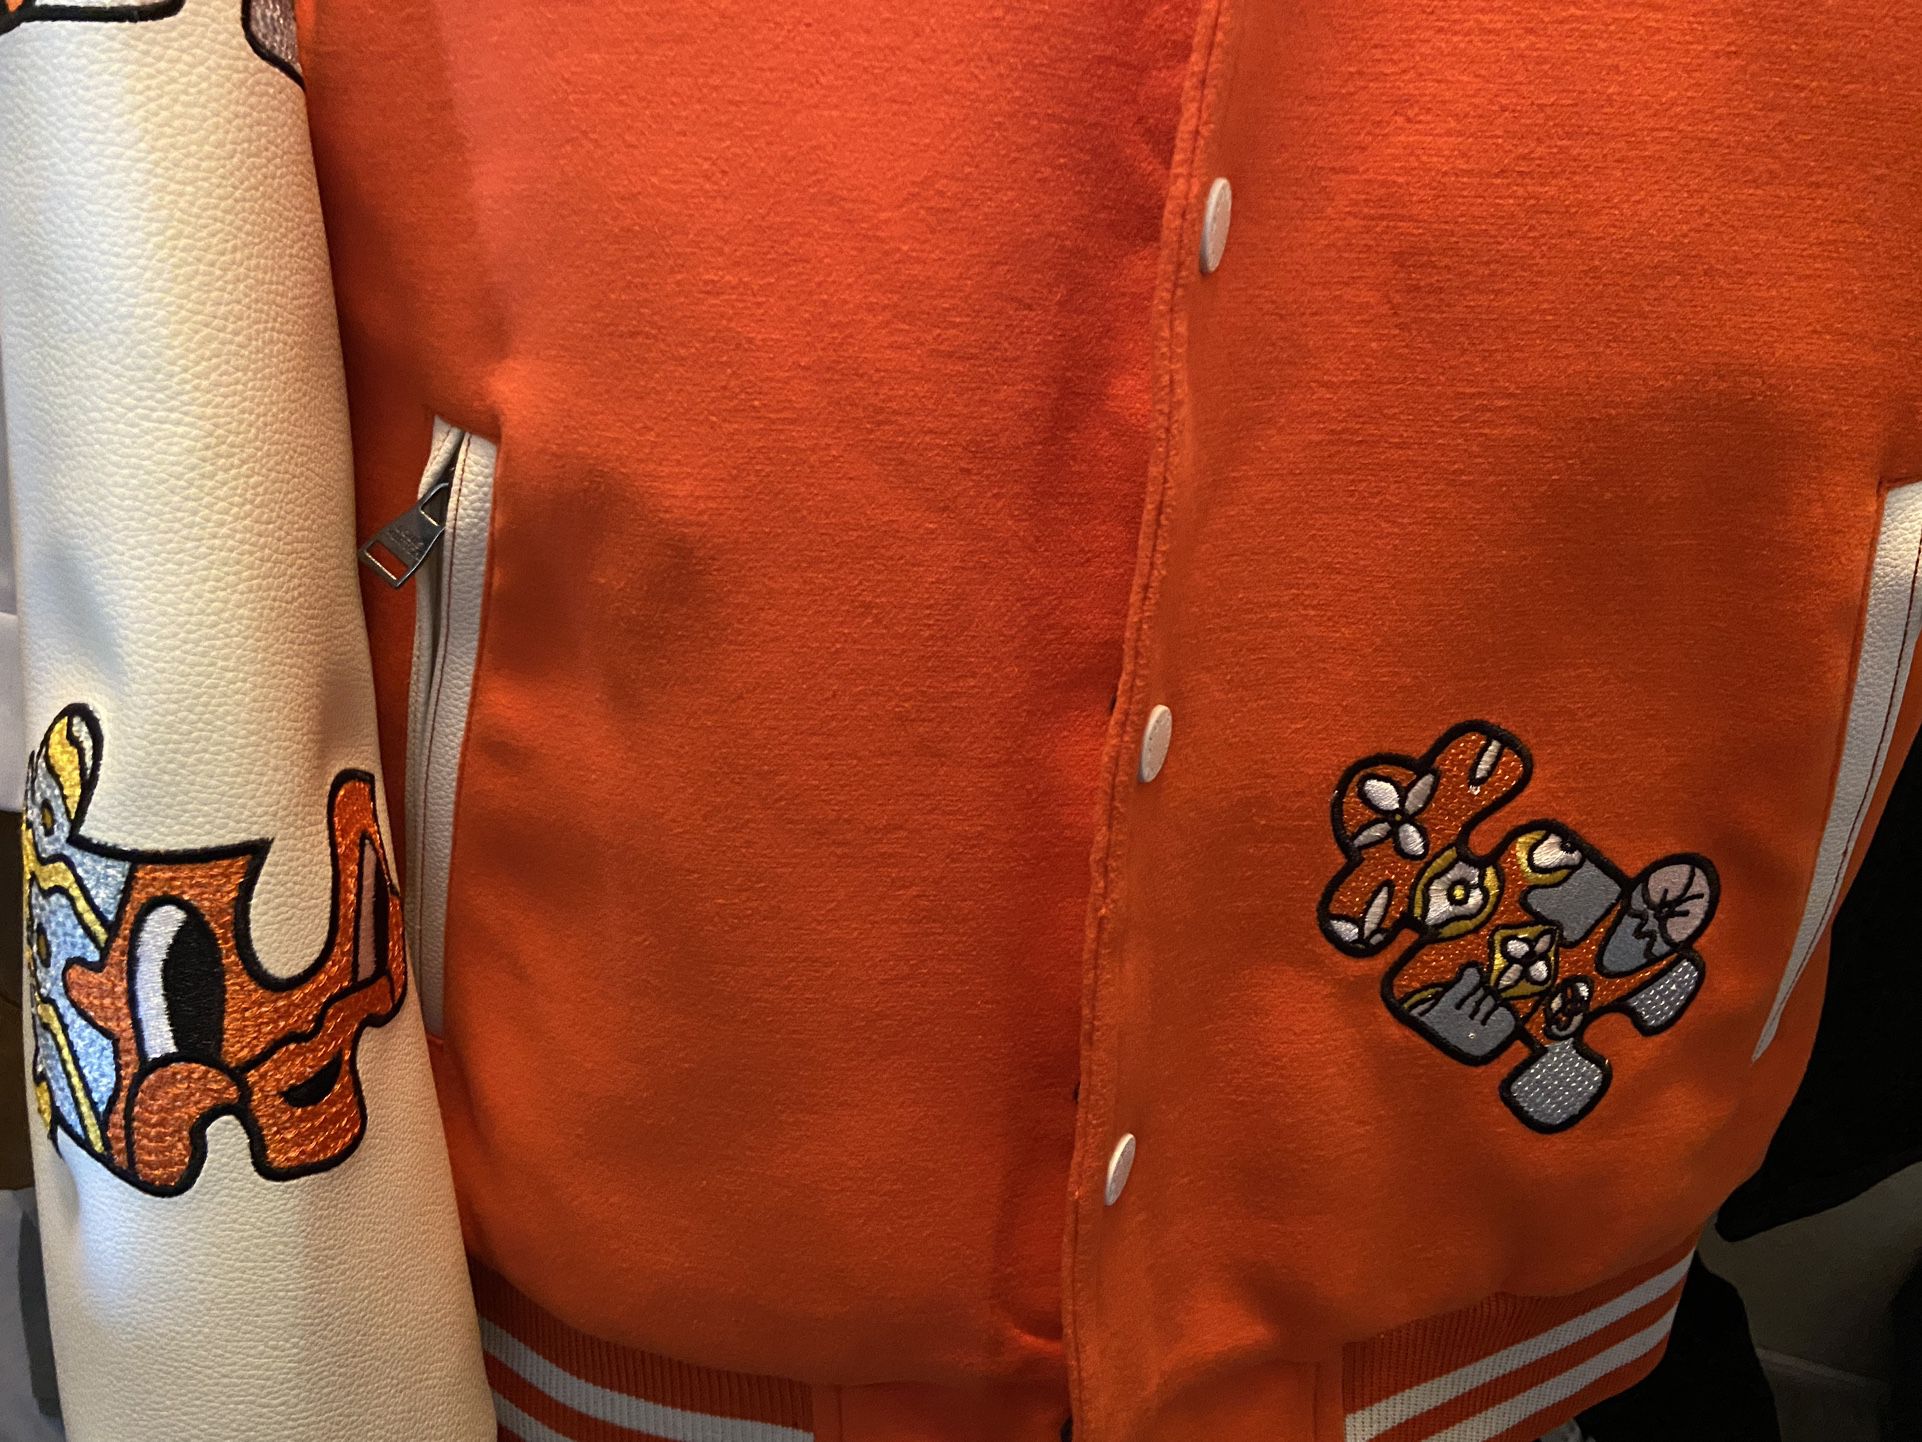 orange lv jacket